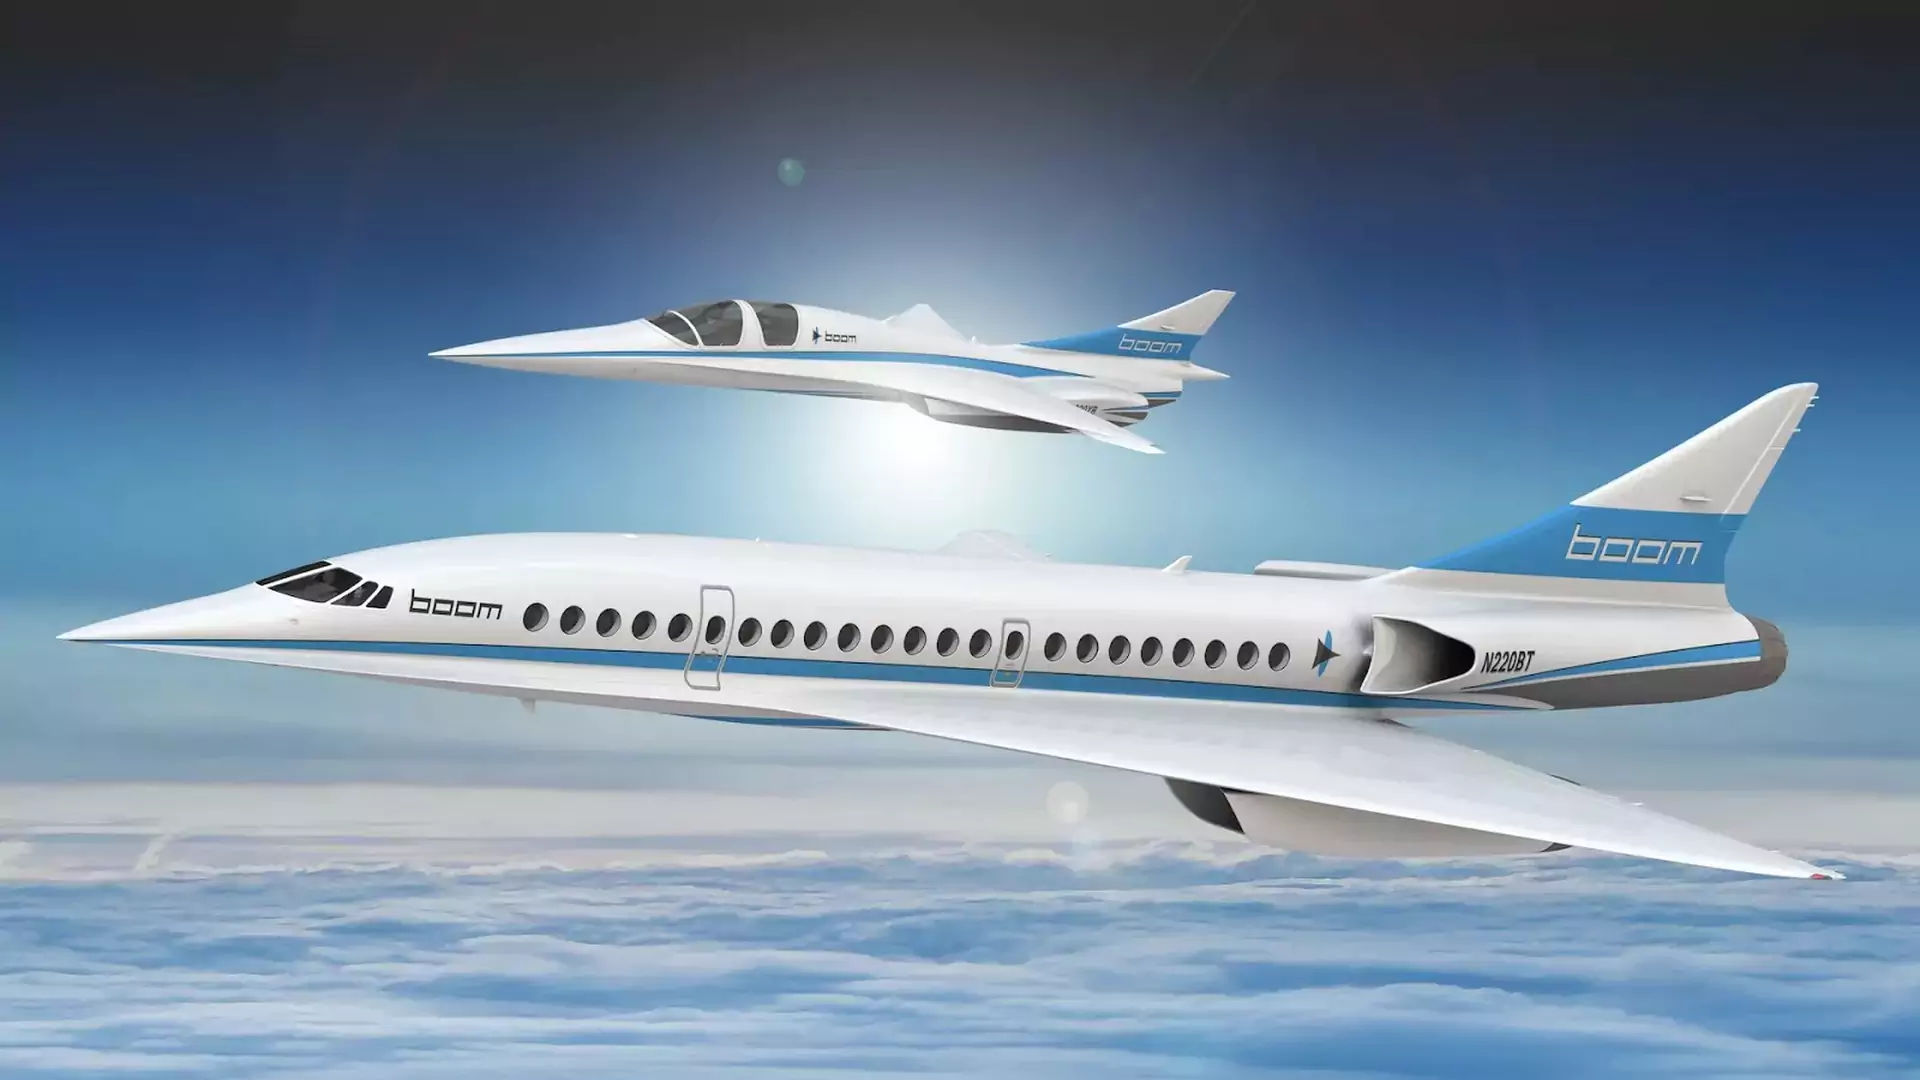 Następca Concorde'a nazywa się "Boom". Jest piękniejszy i jeszcze szybszy